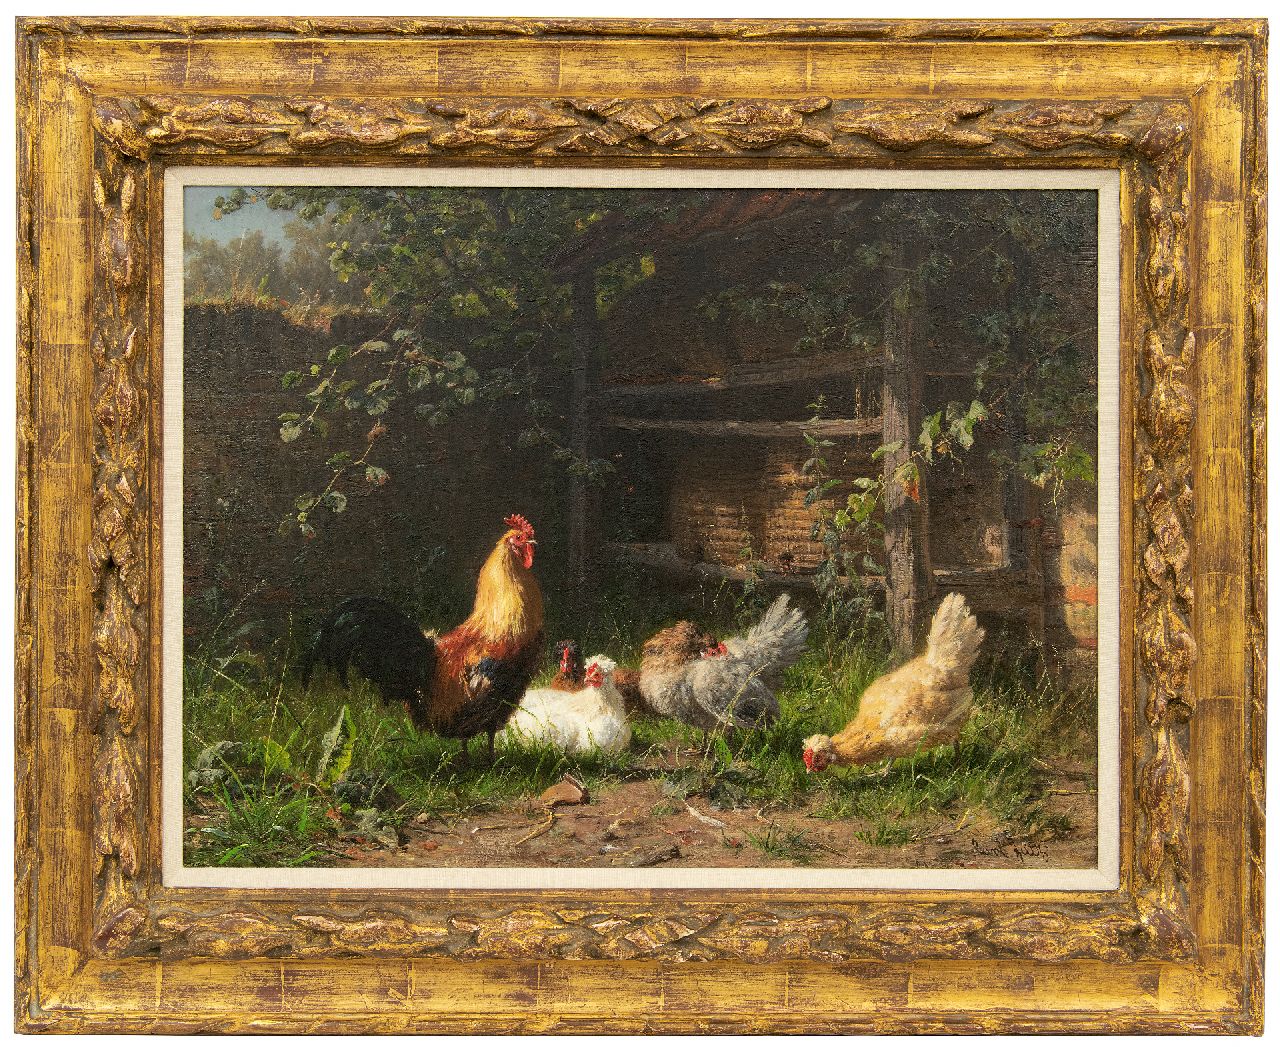 Jutz C.  | Carl Jutz | Schilderijen te koop aangeboden | Haan en kippen bij bijenkorven, olieverf op doek 43,0 x 58,0 cm, gesigneerd rechtsonder